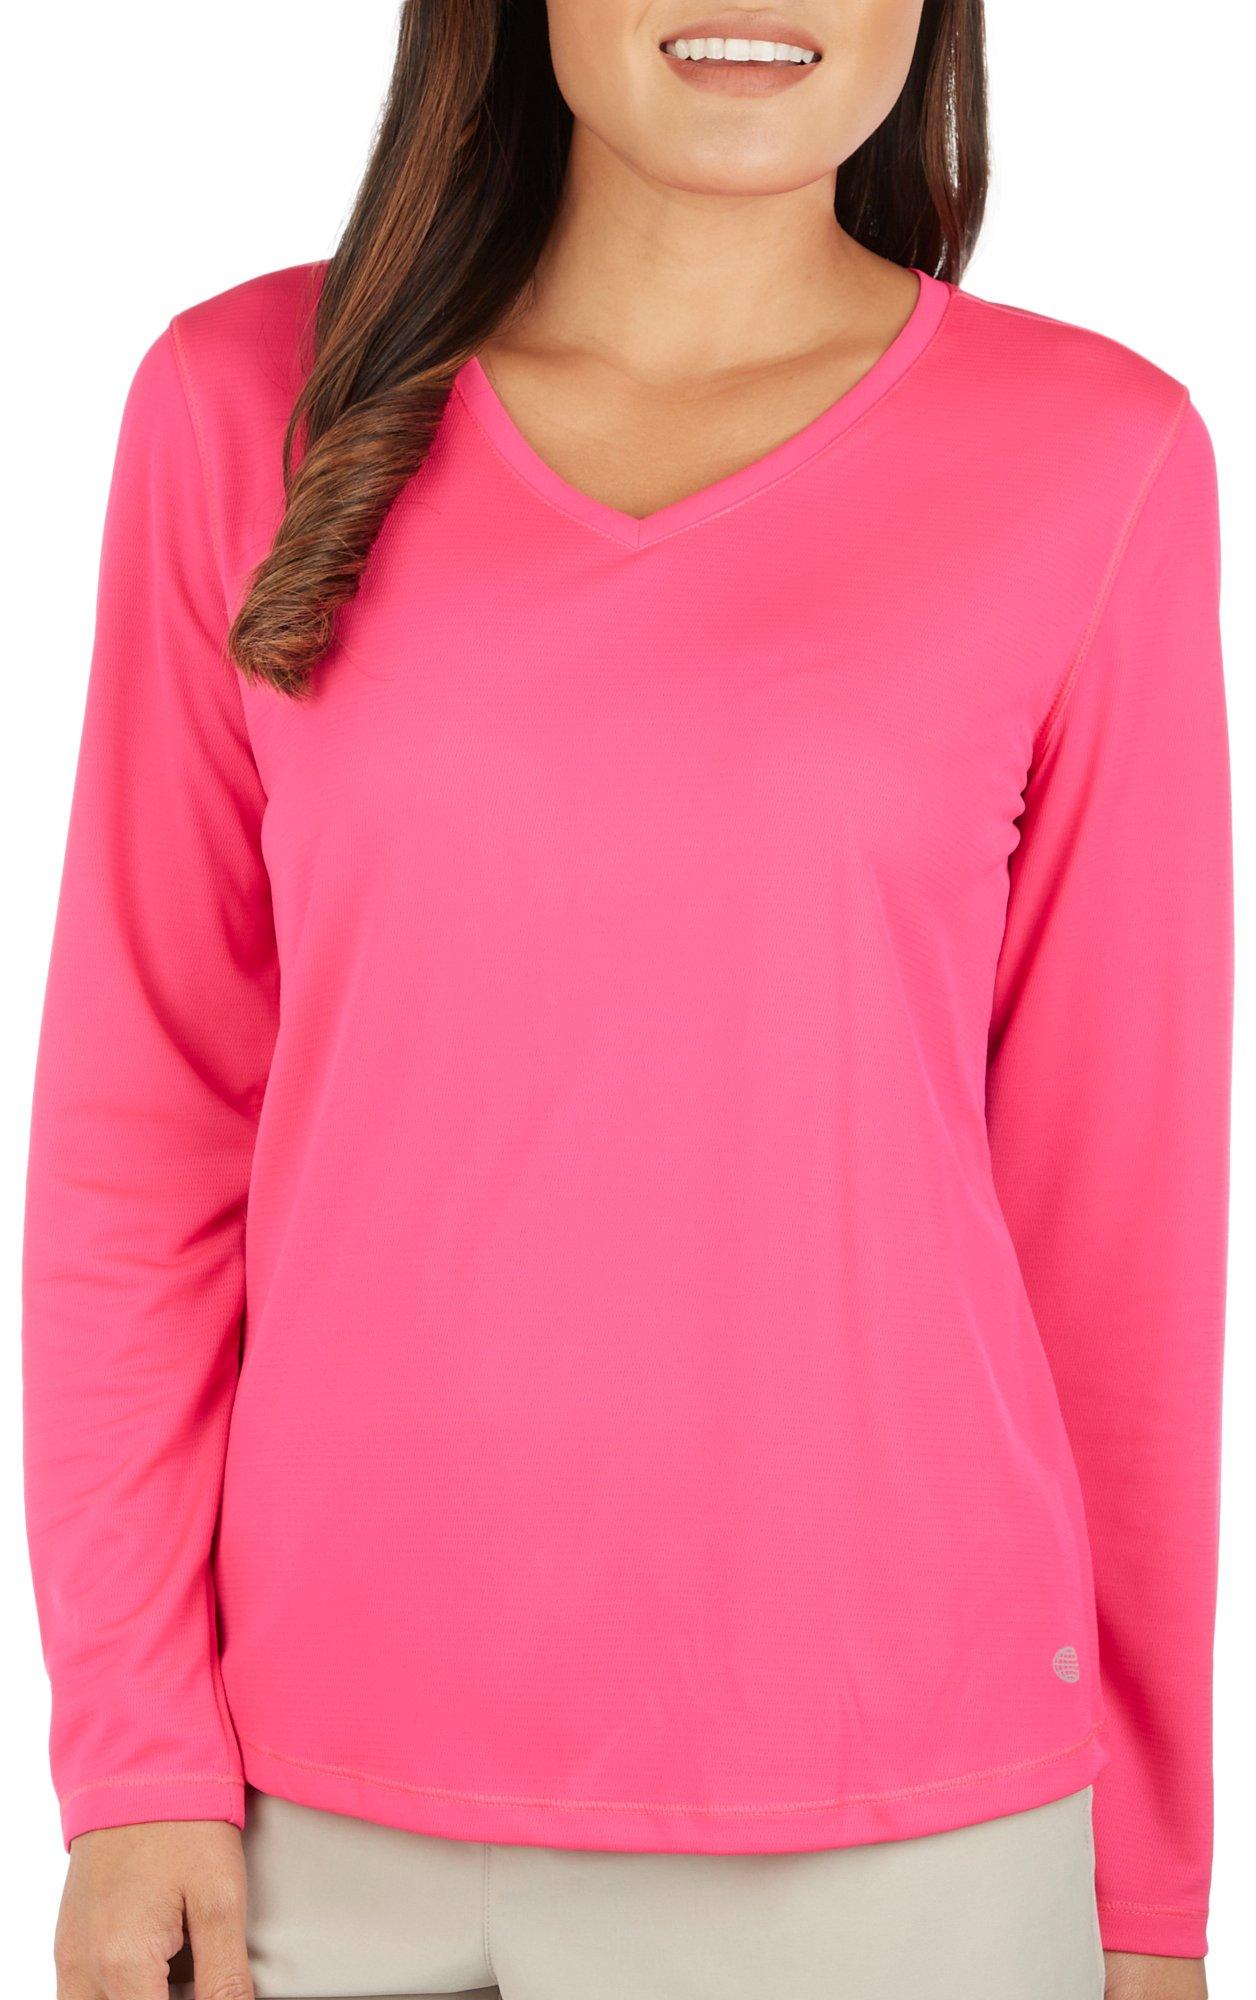 Reel Legends Womens Solid Freeline Long Sleeve Top - Pink Glow - Medium